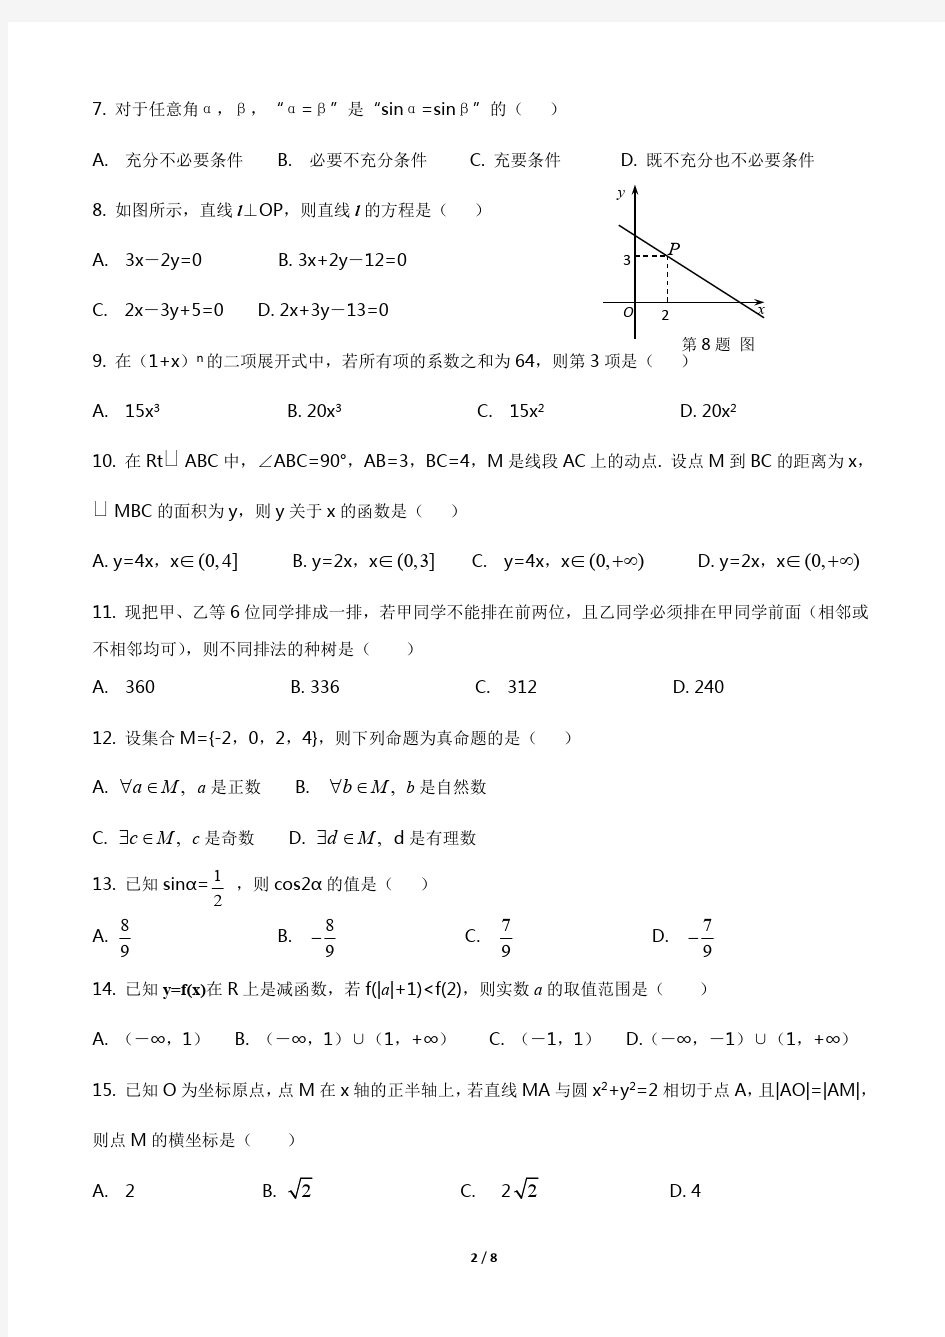 (完整版)2019年山东省春季高考数学试题及答案(最新整理)